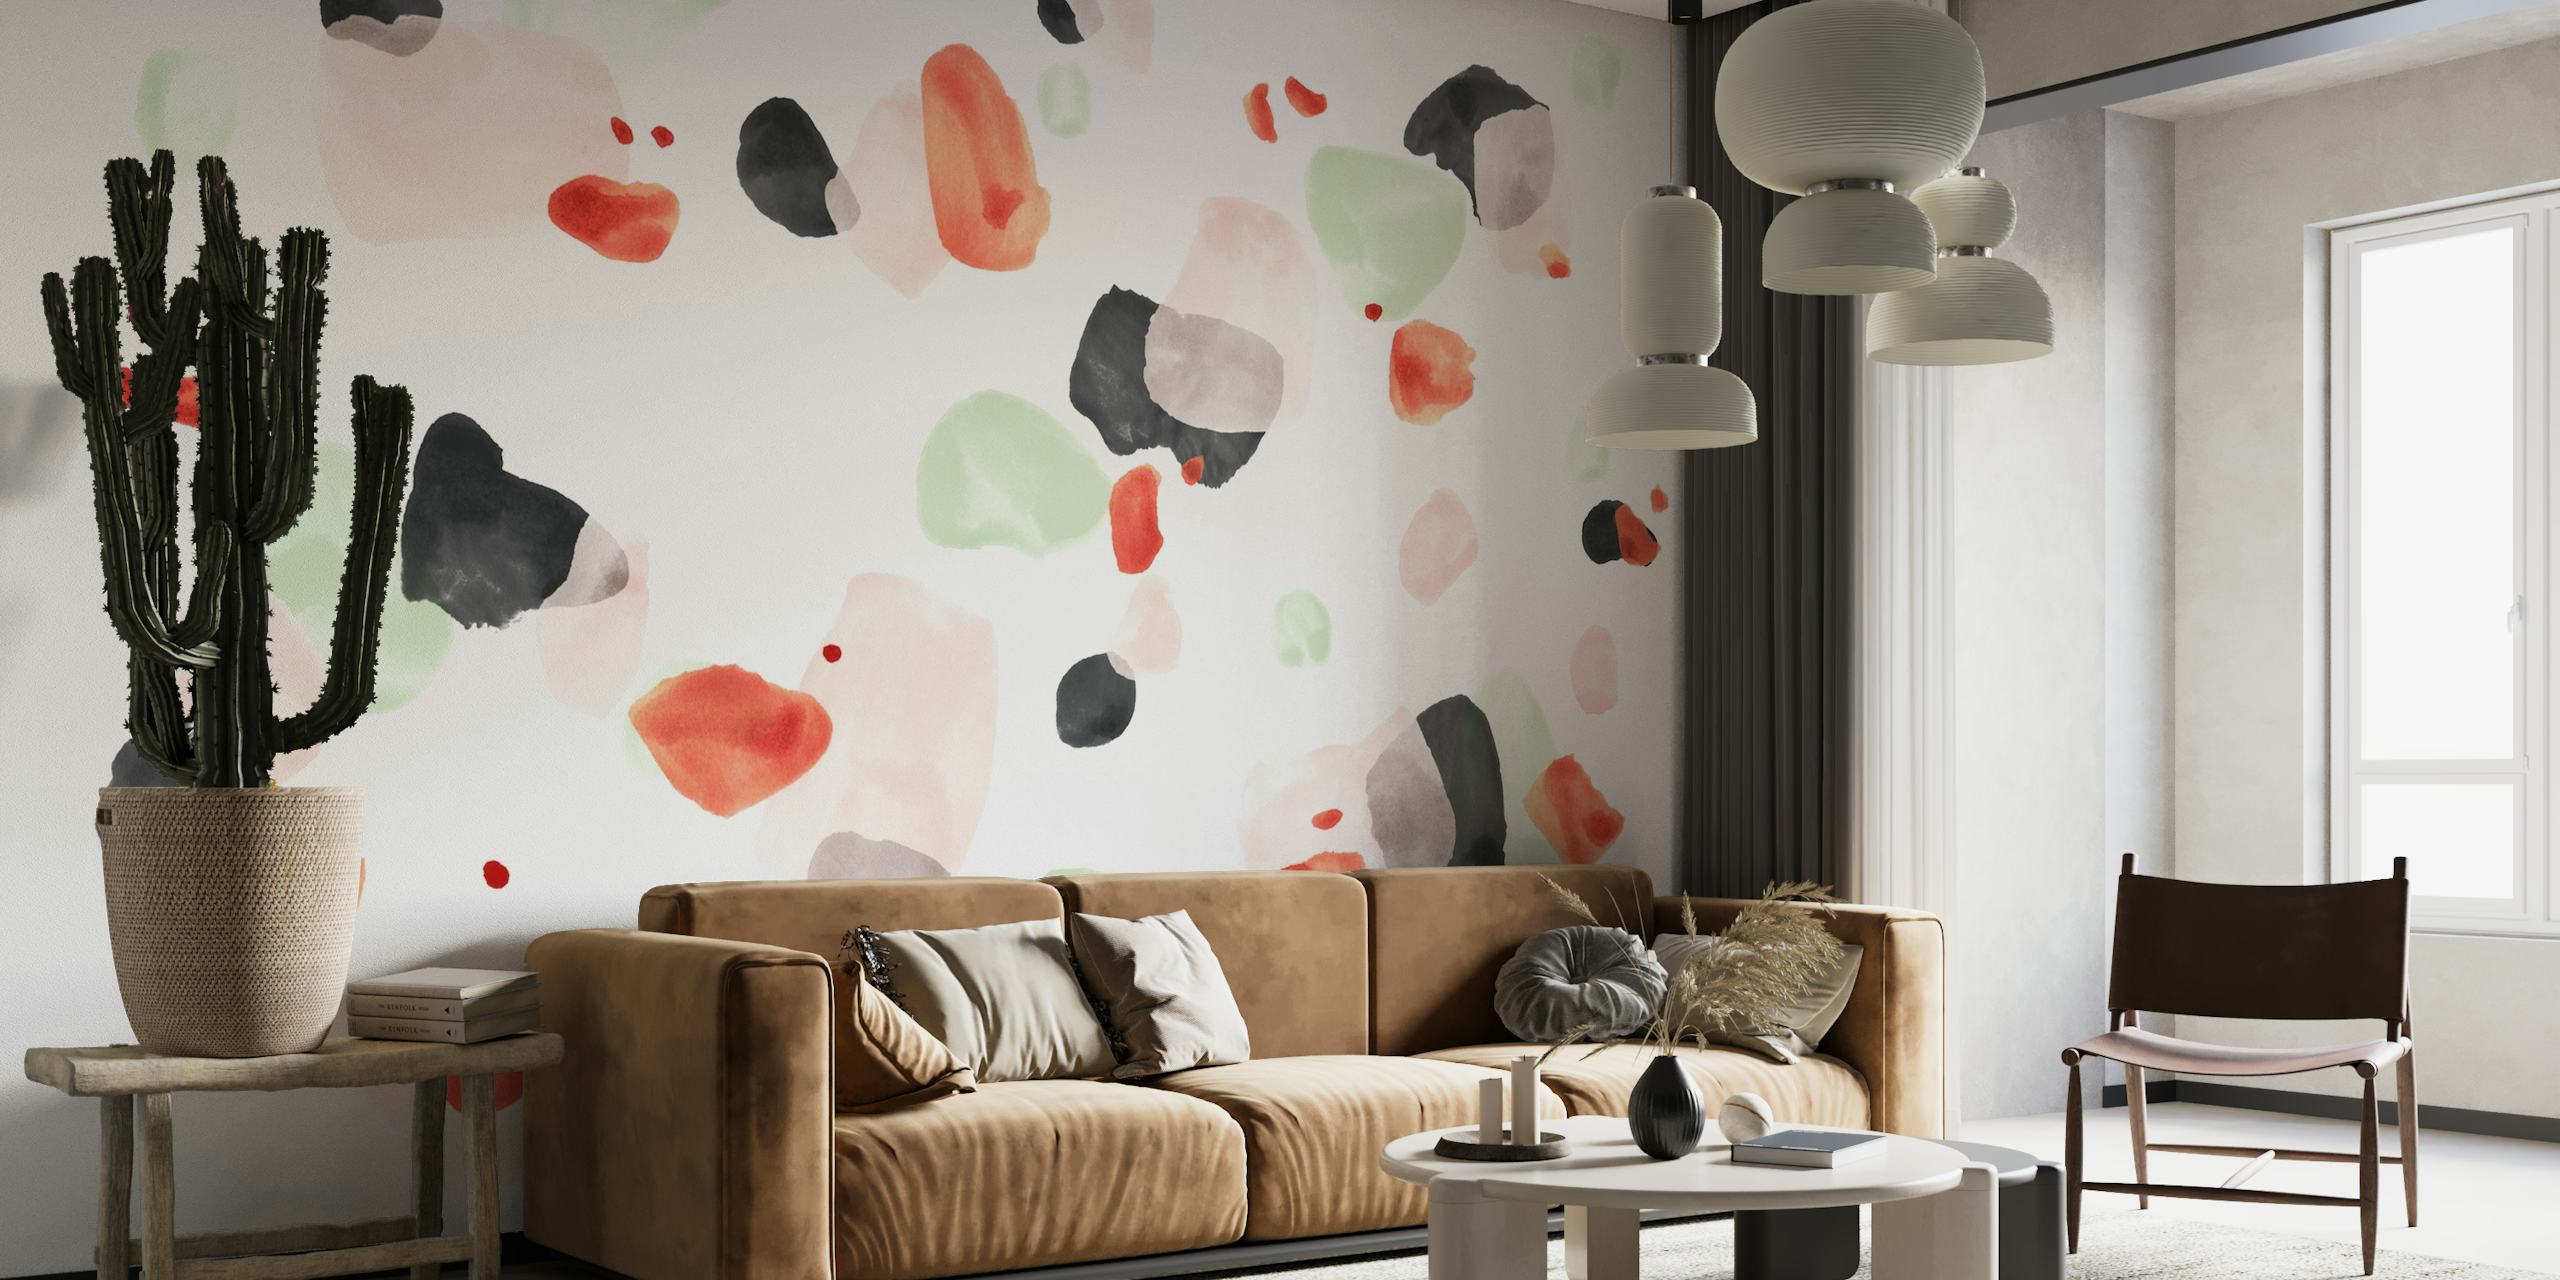 Abstract Terrazzo 06 fotobehang met verspreide vormen in zachte kleuren